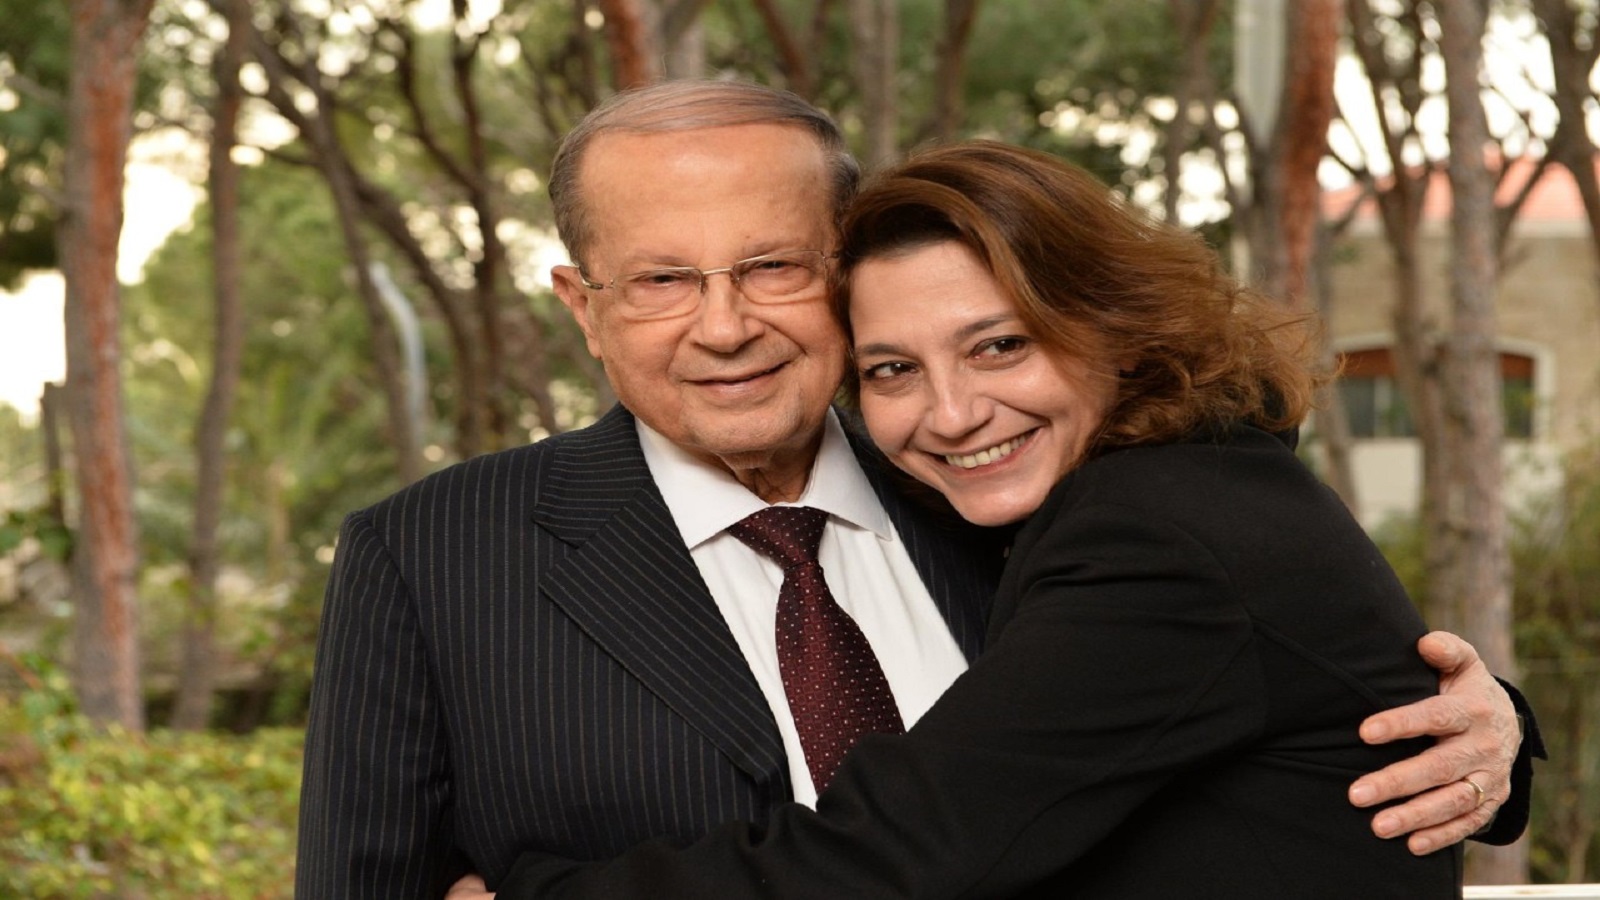 ابنة الرئيس تصف اللبناني بـ"الساذج": مكاشفة فاقعة